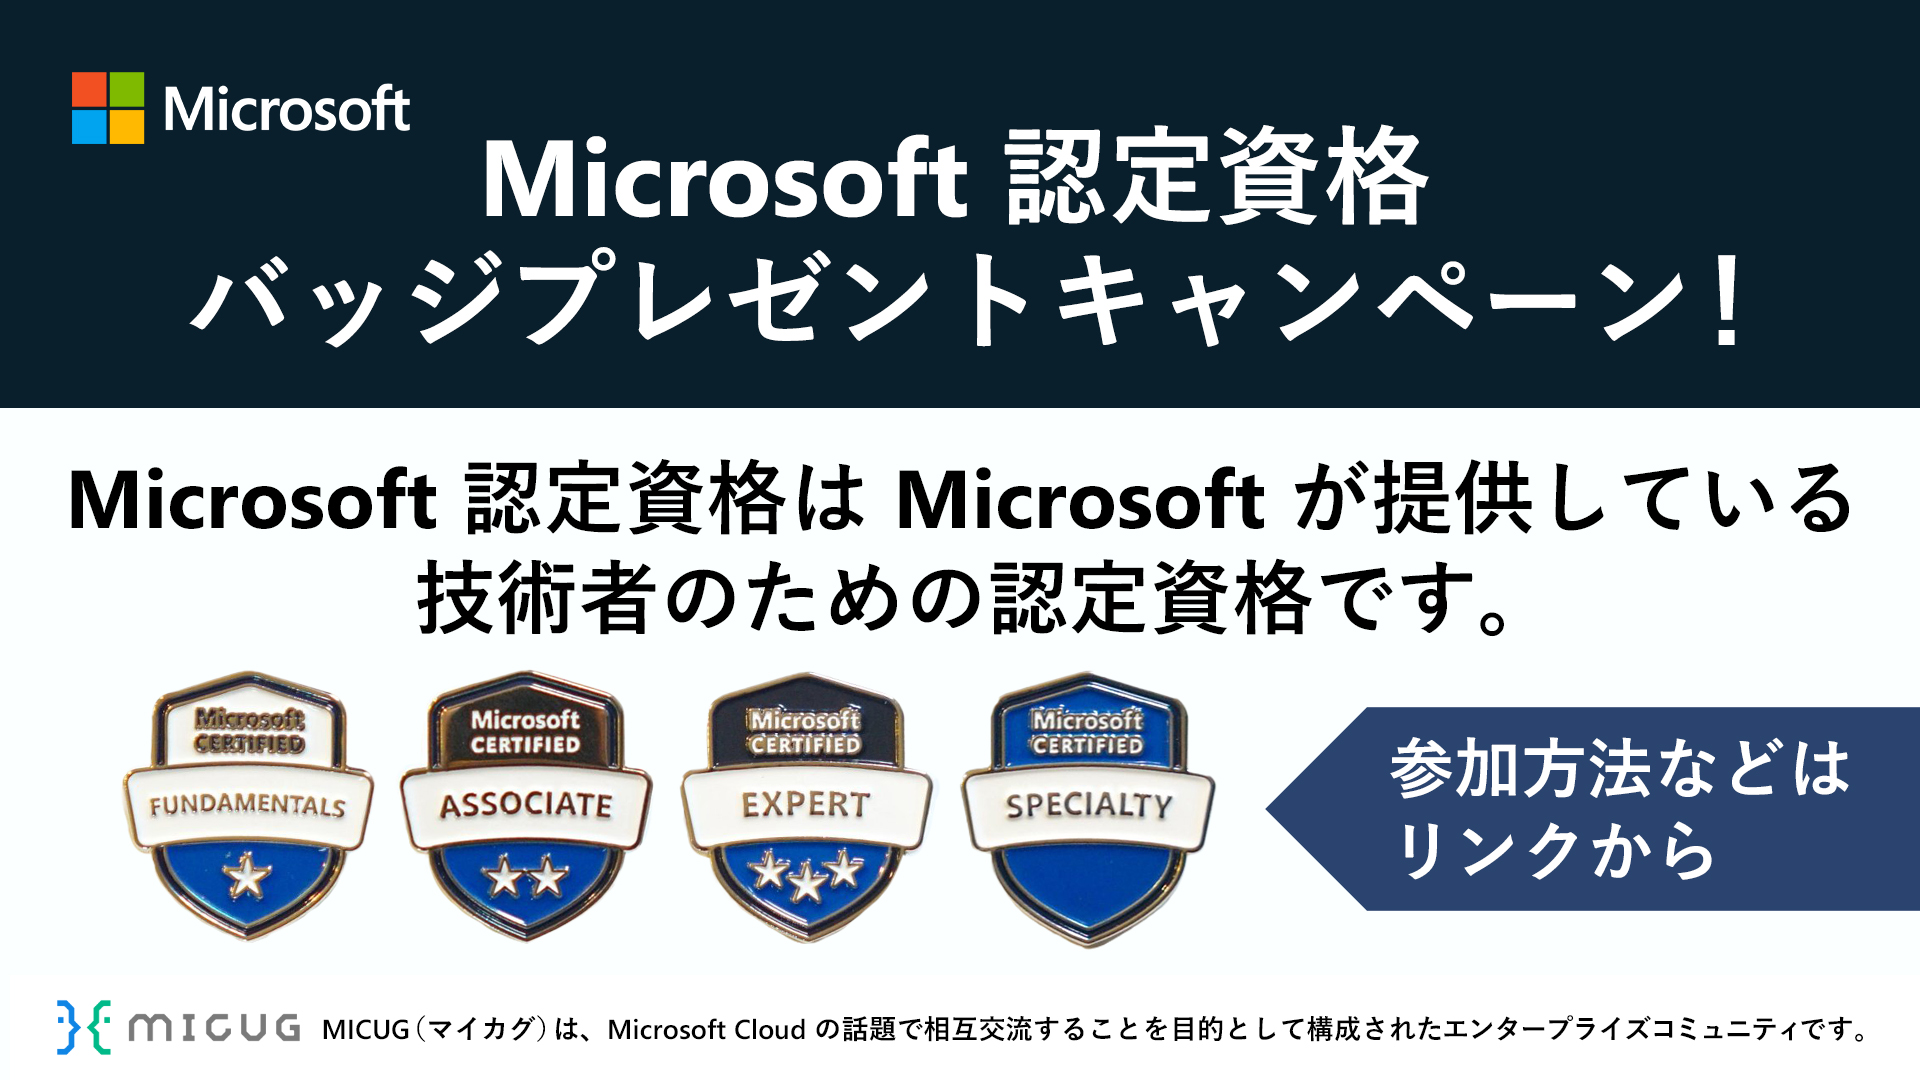 日本マイクロソフト株式会社 on X: 